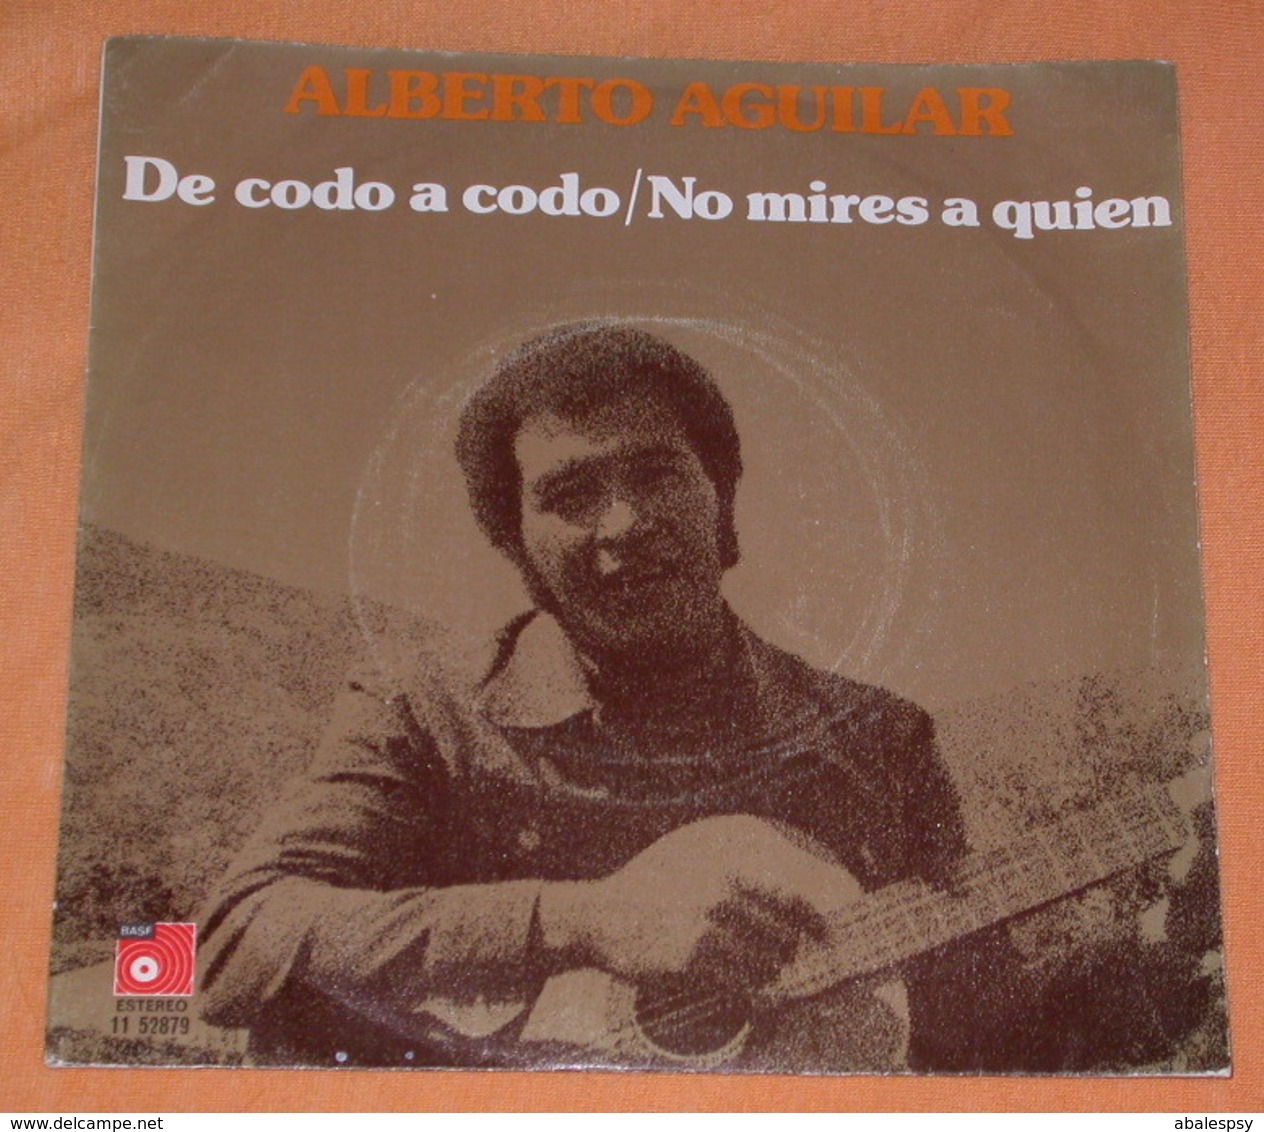 Alberto Aguilar 45t De Codo A Codo / No Mires A Quien (BAS 1975 Spain) Dedicace VG+ M - Otros - Canción Española